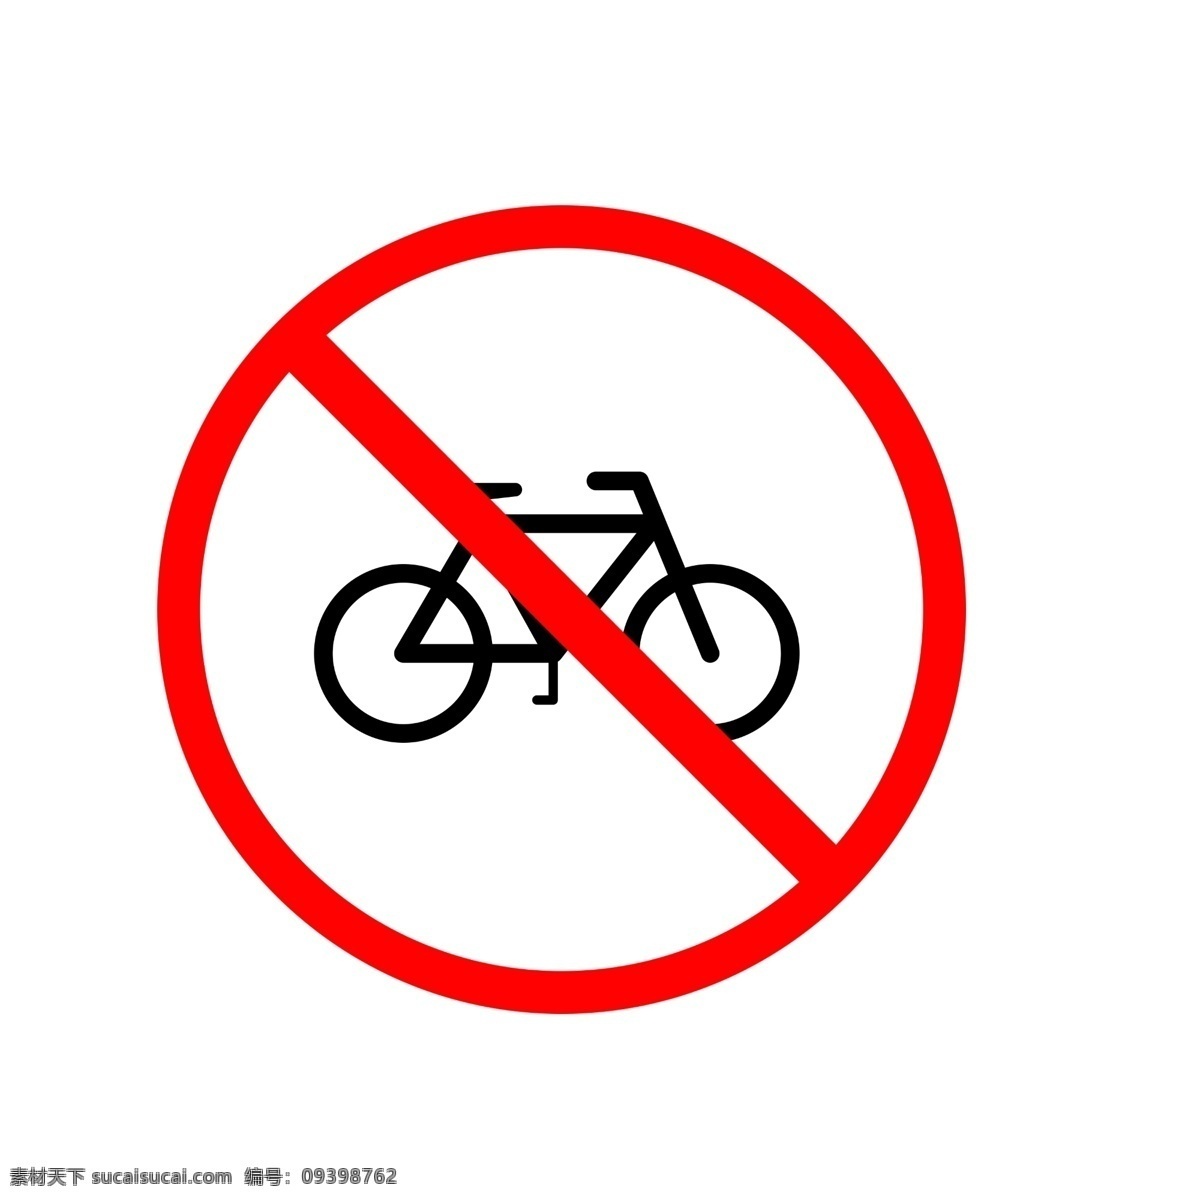 警告 牌 温馨 提示 插画 禁止骑车图标 禁止标识 警告牌 温馨提示插画 公共标识标志 标识标志图标